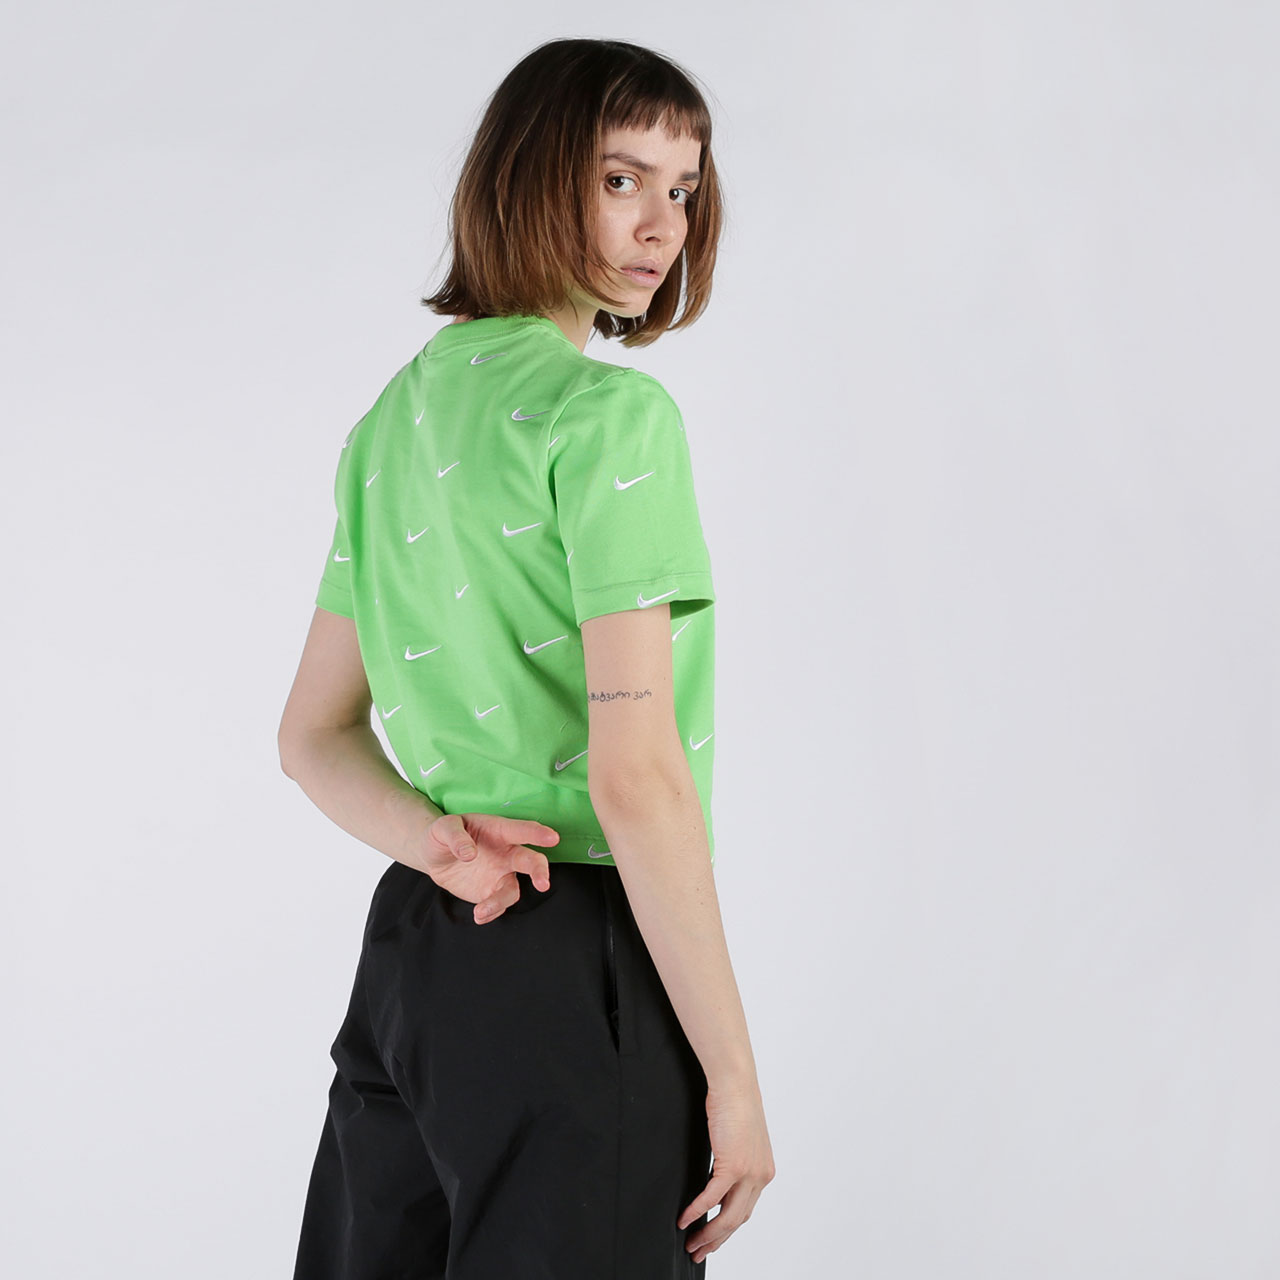 женская зеленая футболка Nike Swoosh Logo T-Shirt CK4092-378 - цена, описание, фото 1